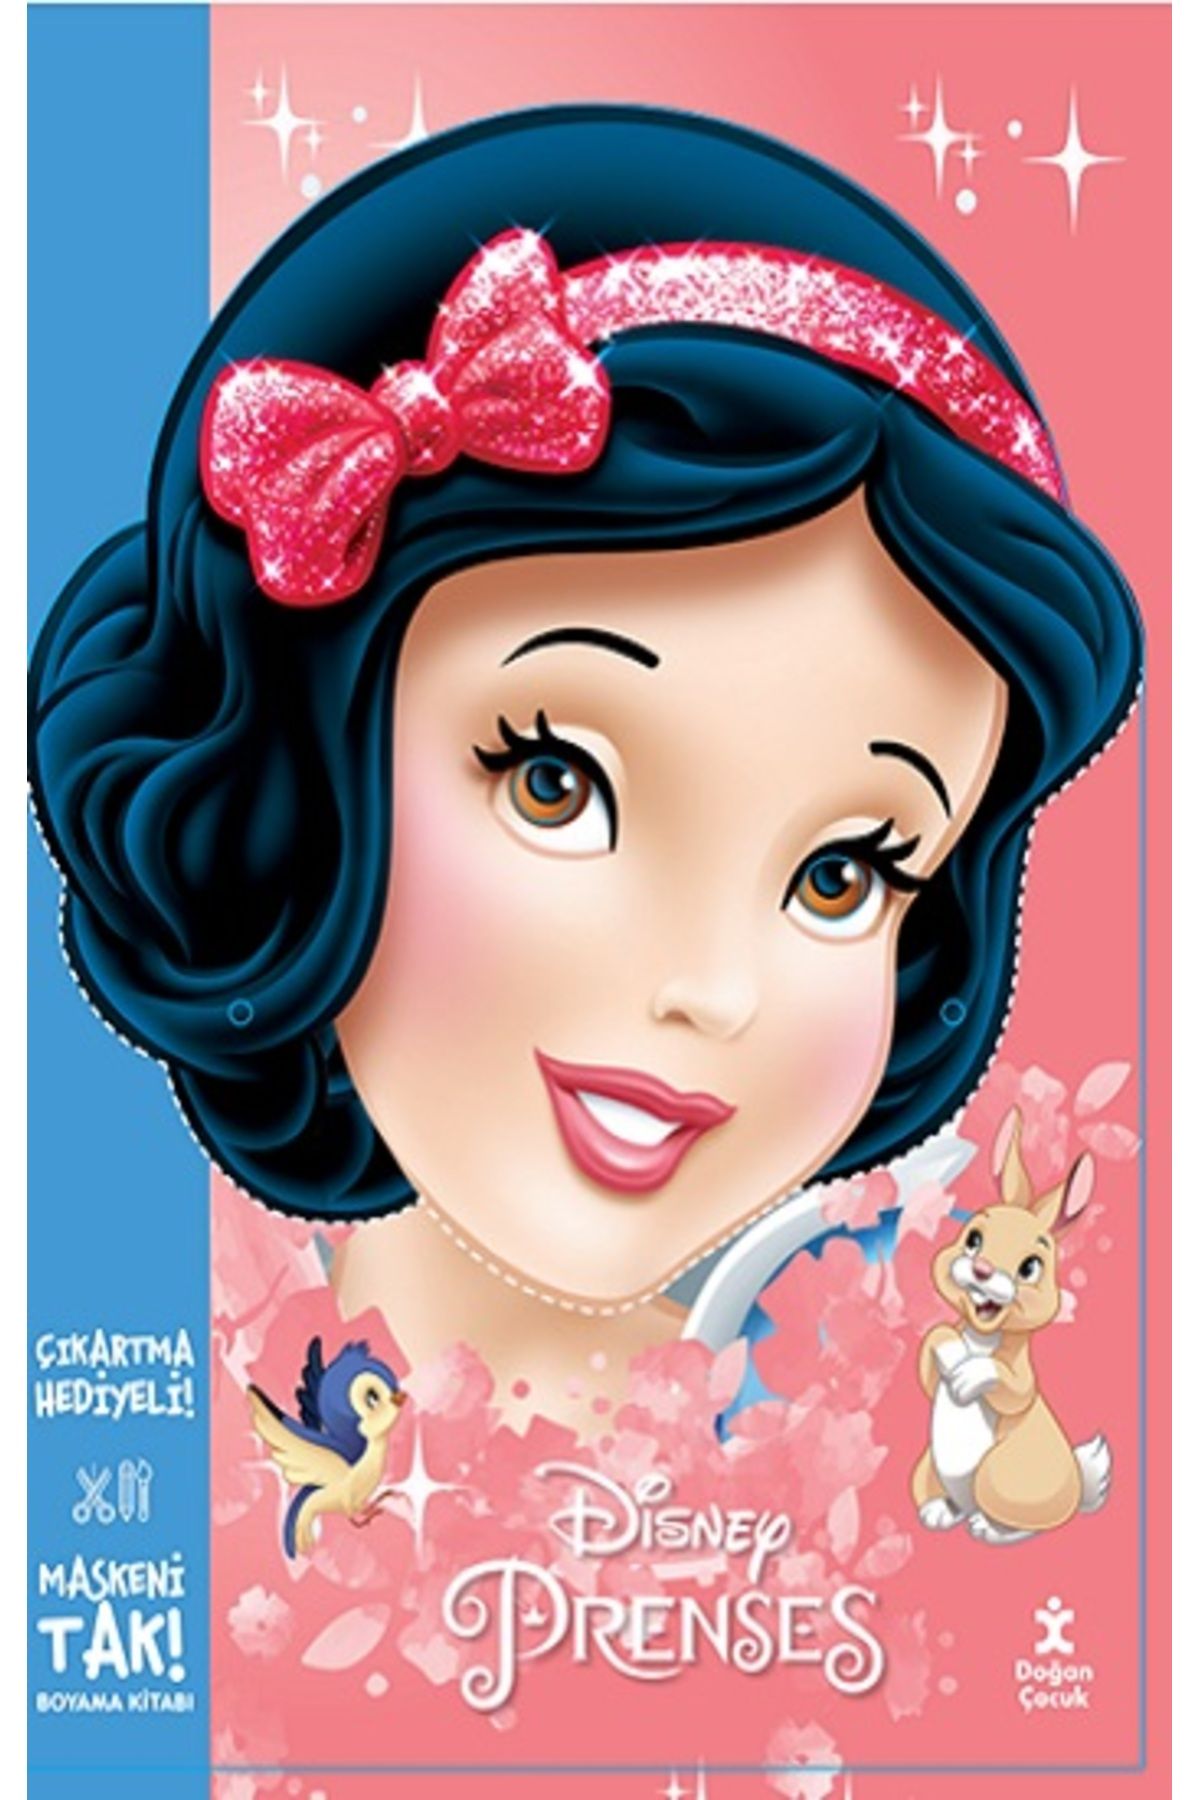 Doğan Çocuk Maskeni Tak Disney Prenses Çıkartma Hediyeli Boyama Kitabı